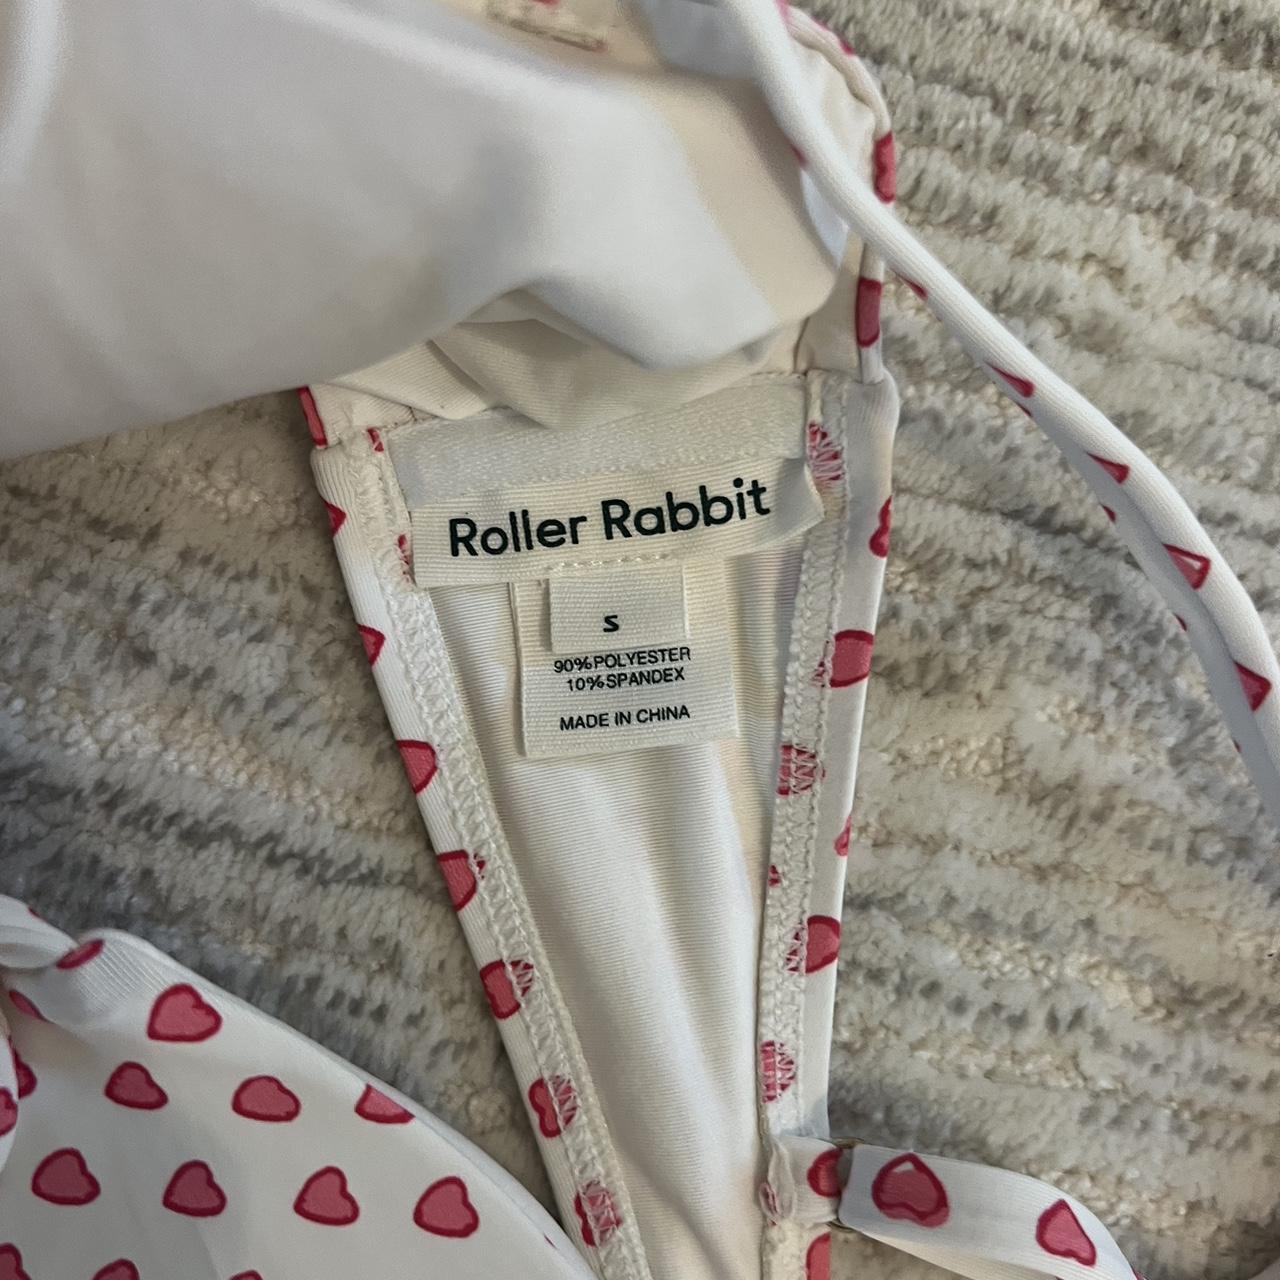 ROLLER RABBIT bathing suit top! - size S - super... - Depop